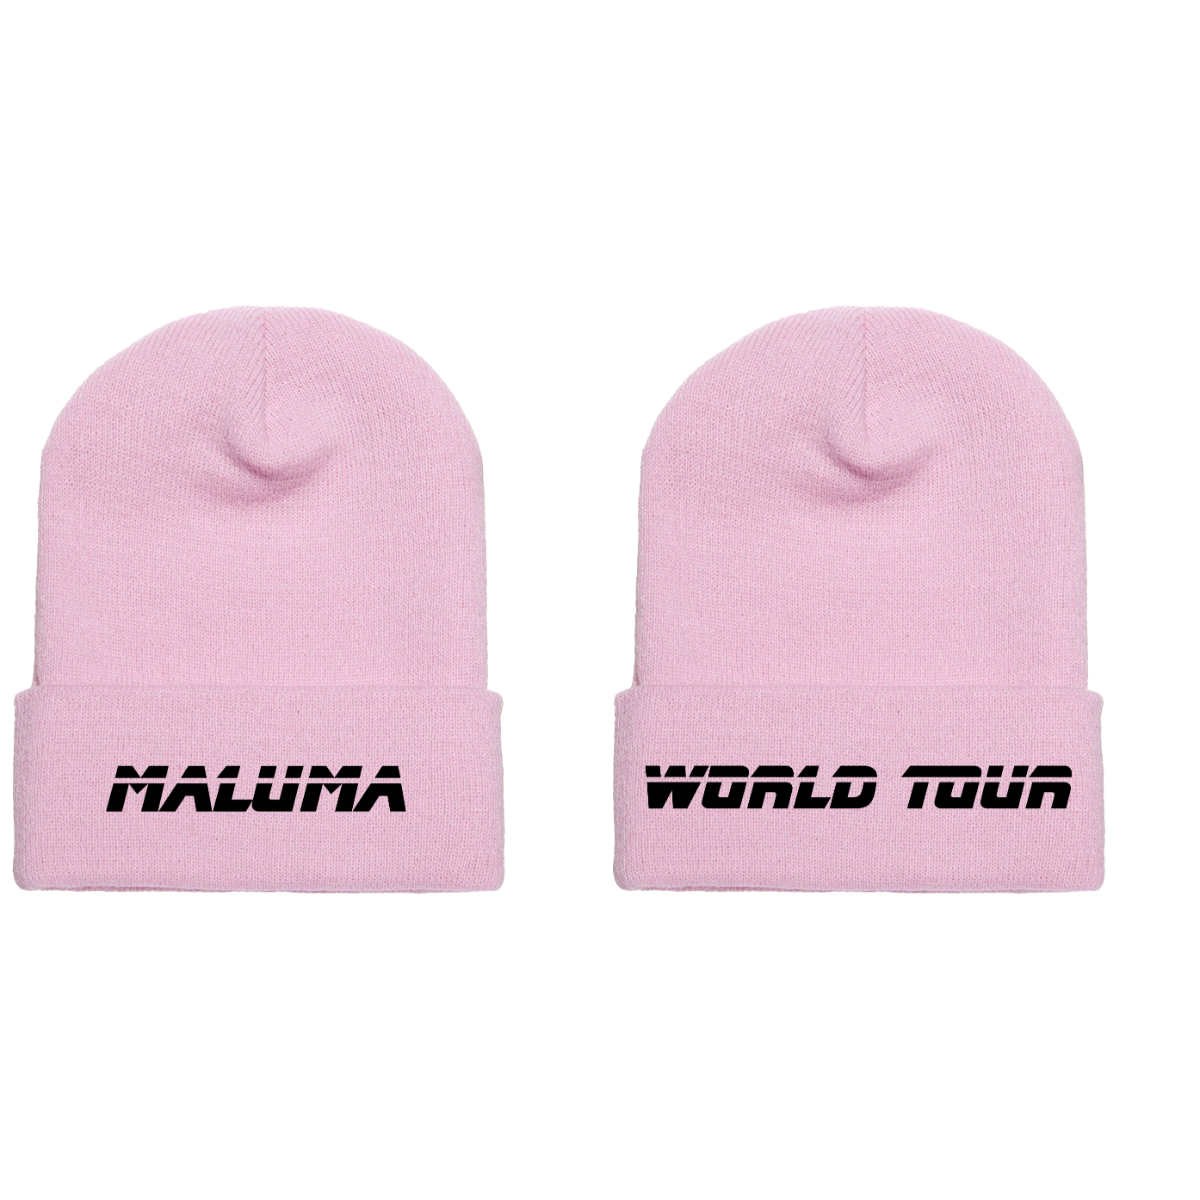 Maluma World Tour Pink Beanie